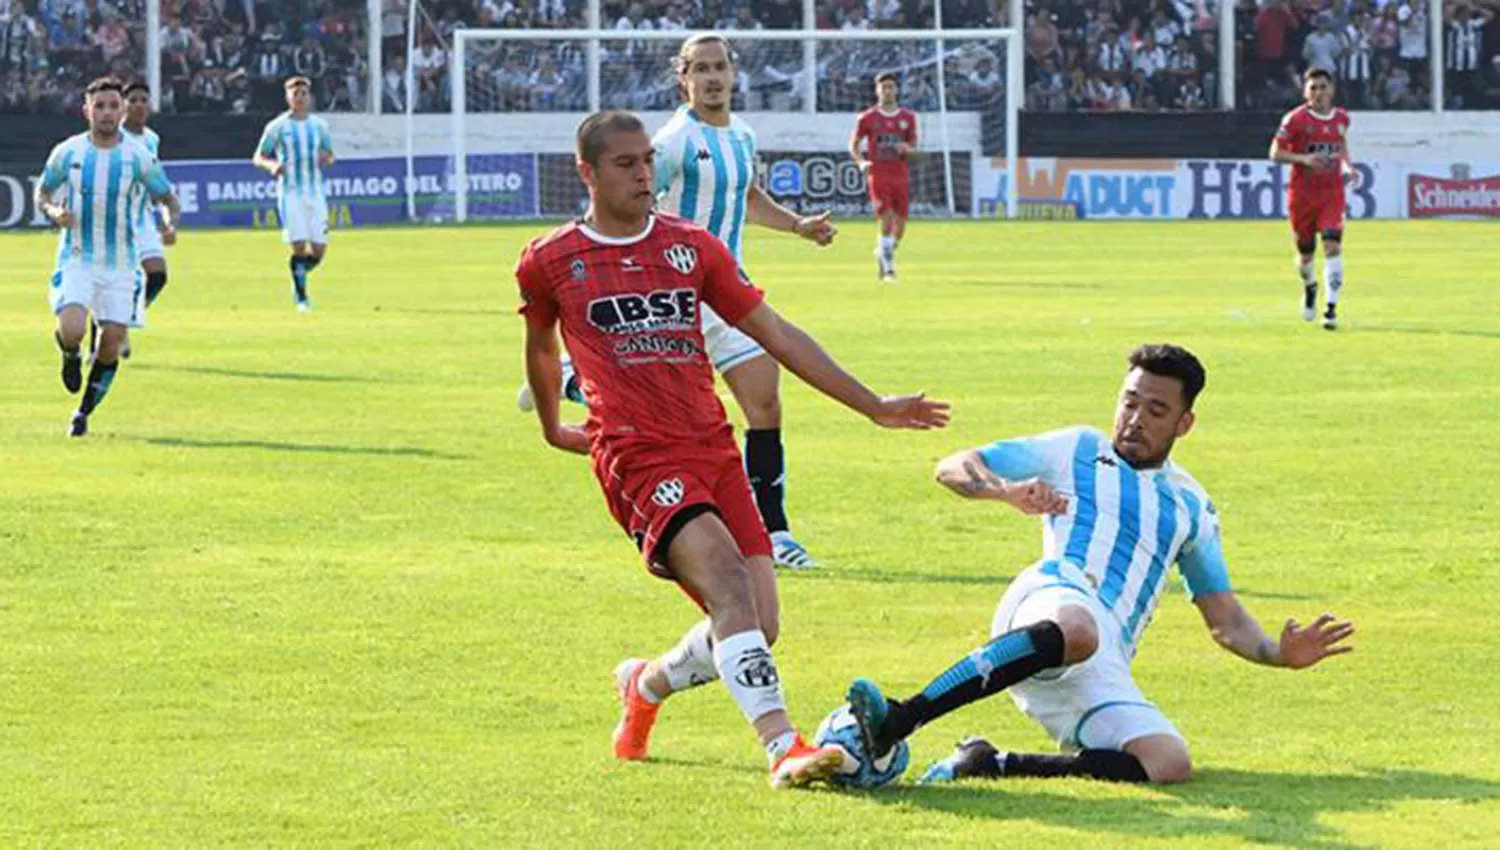 Facundo Melivilo, en acción contra Atlético por la Superliga. (FOTO TOMADA DE www.diariopanorama.com)